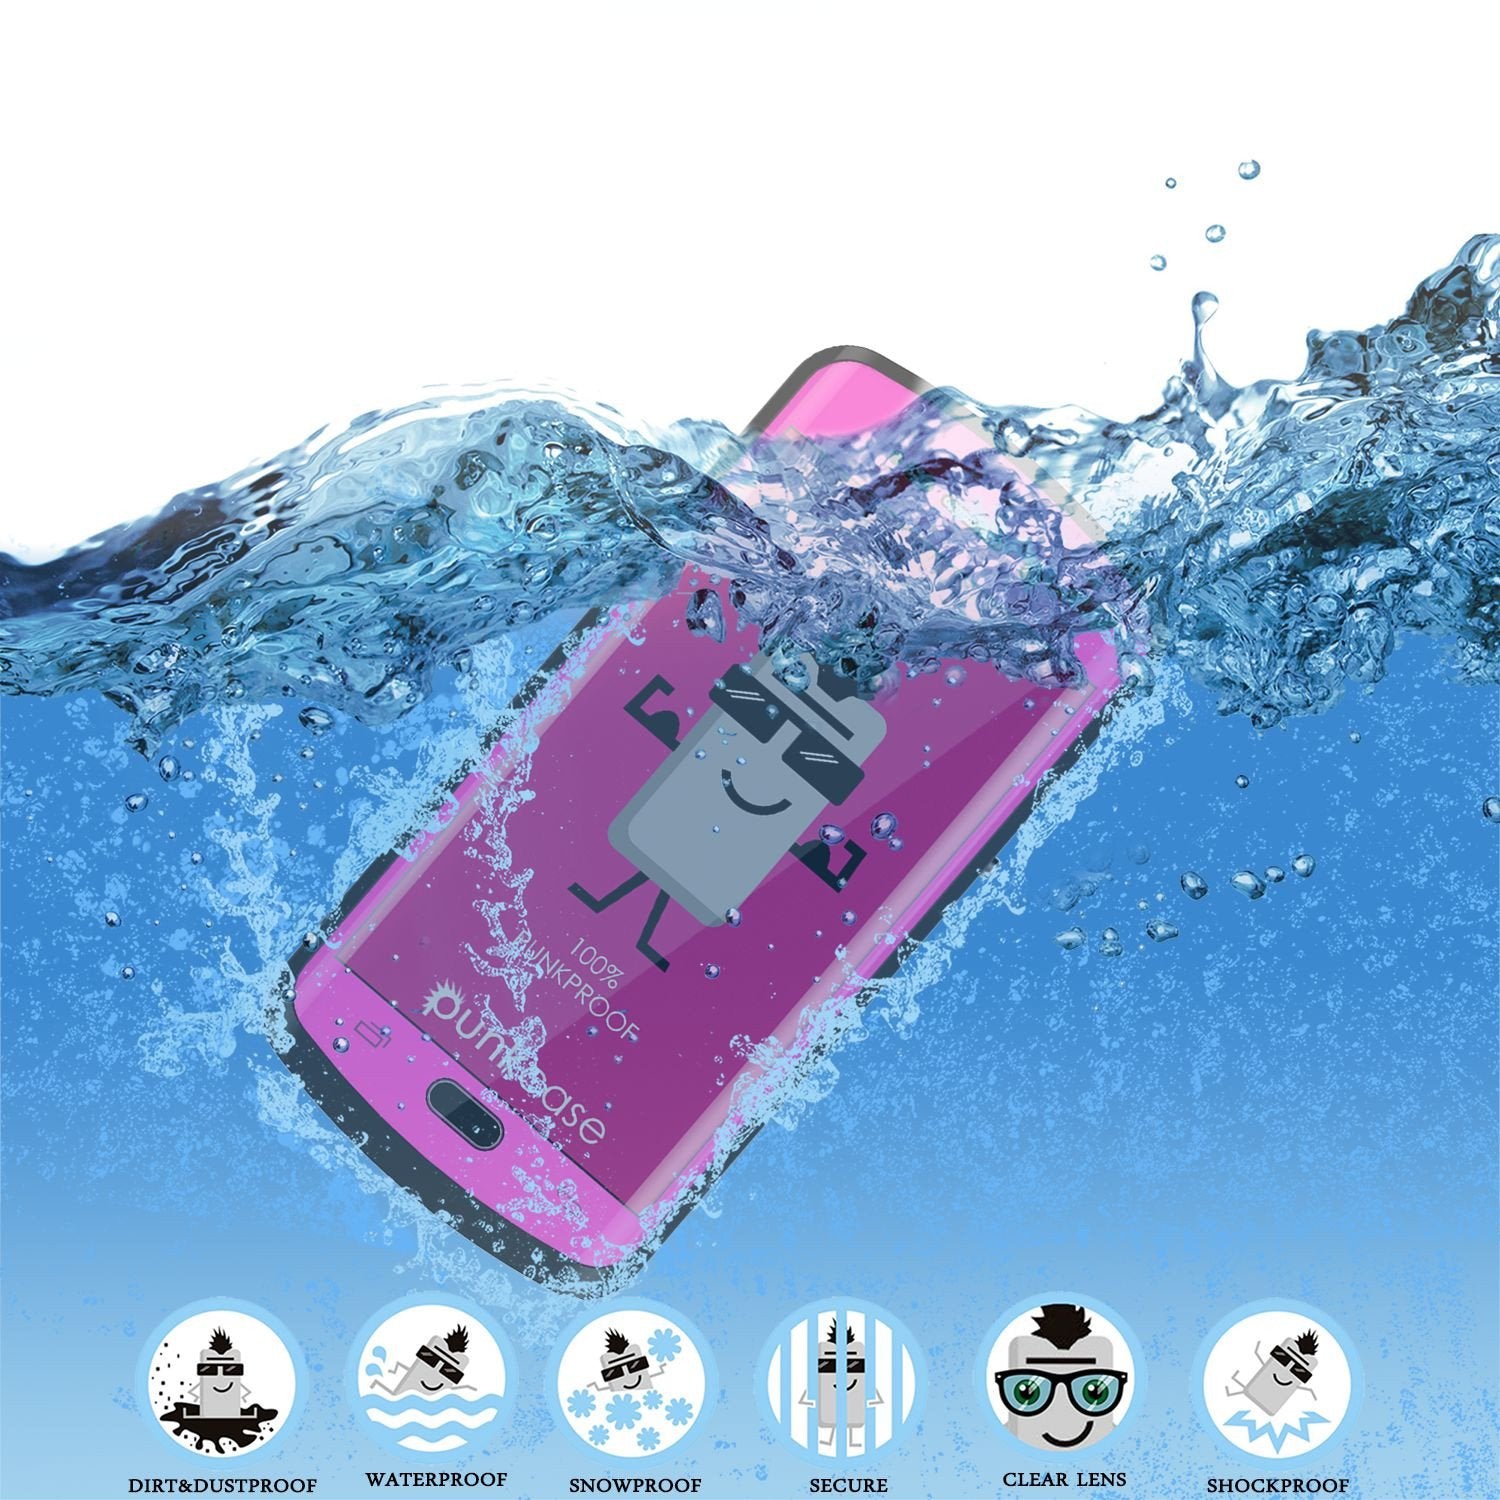 Galaxy s6 EDGE Plus Waterproof Case, Punkcase StudStar Pink Shock/DirtProof | Lifetime Warranty - PunkCase NZ